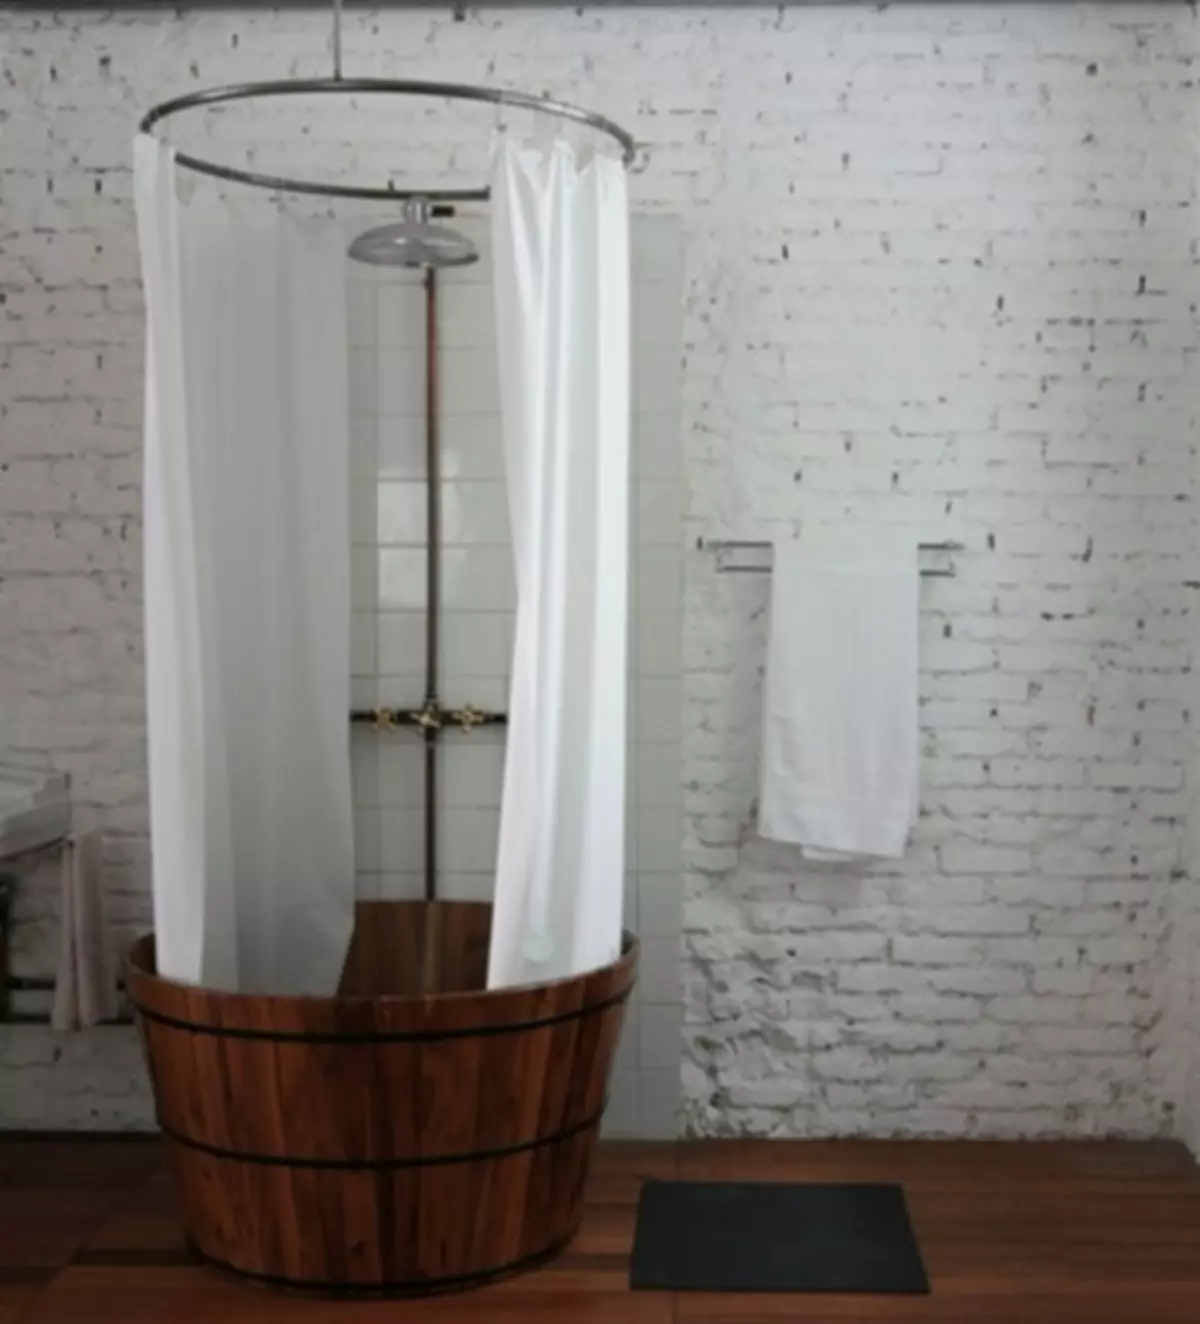 Cabine de douche dans une maison en bois